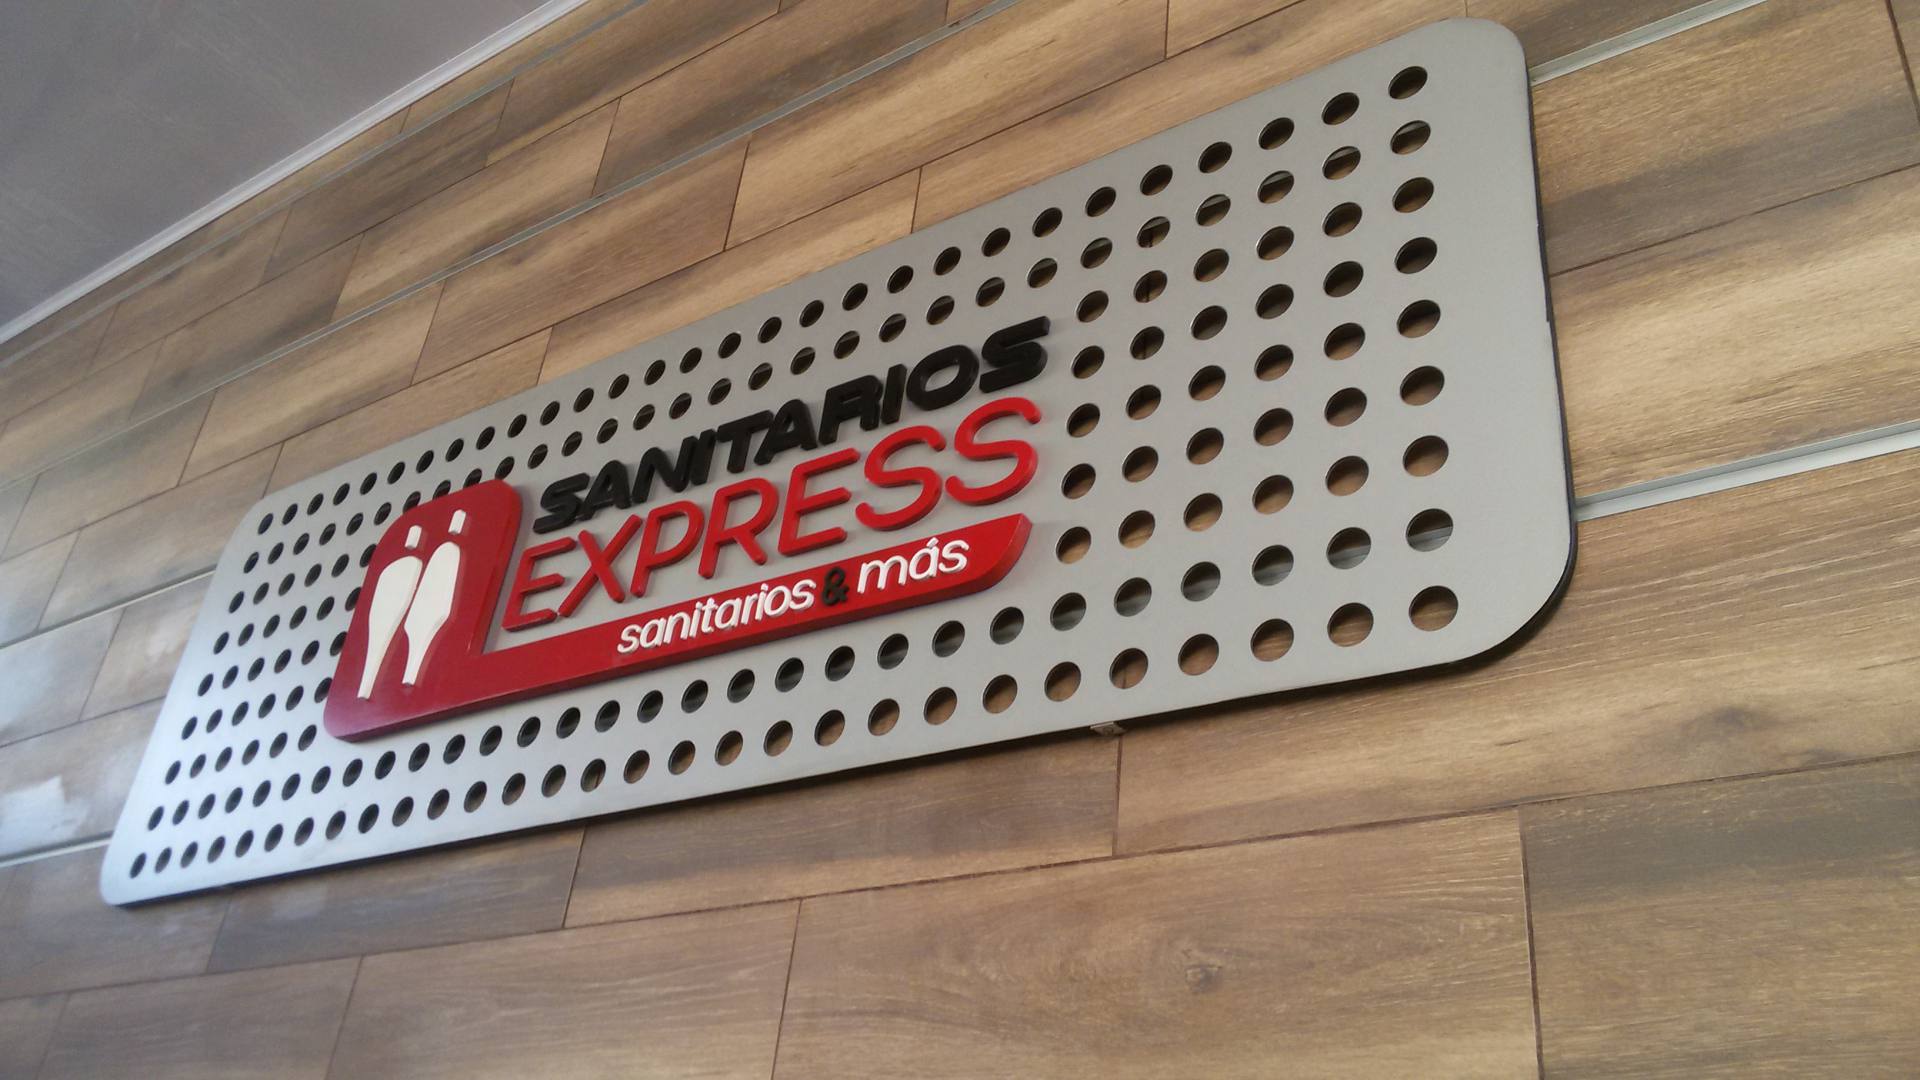 Sanitarios Express